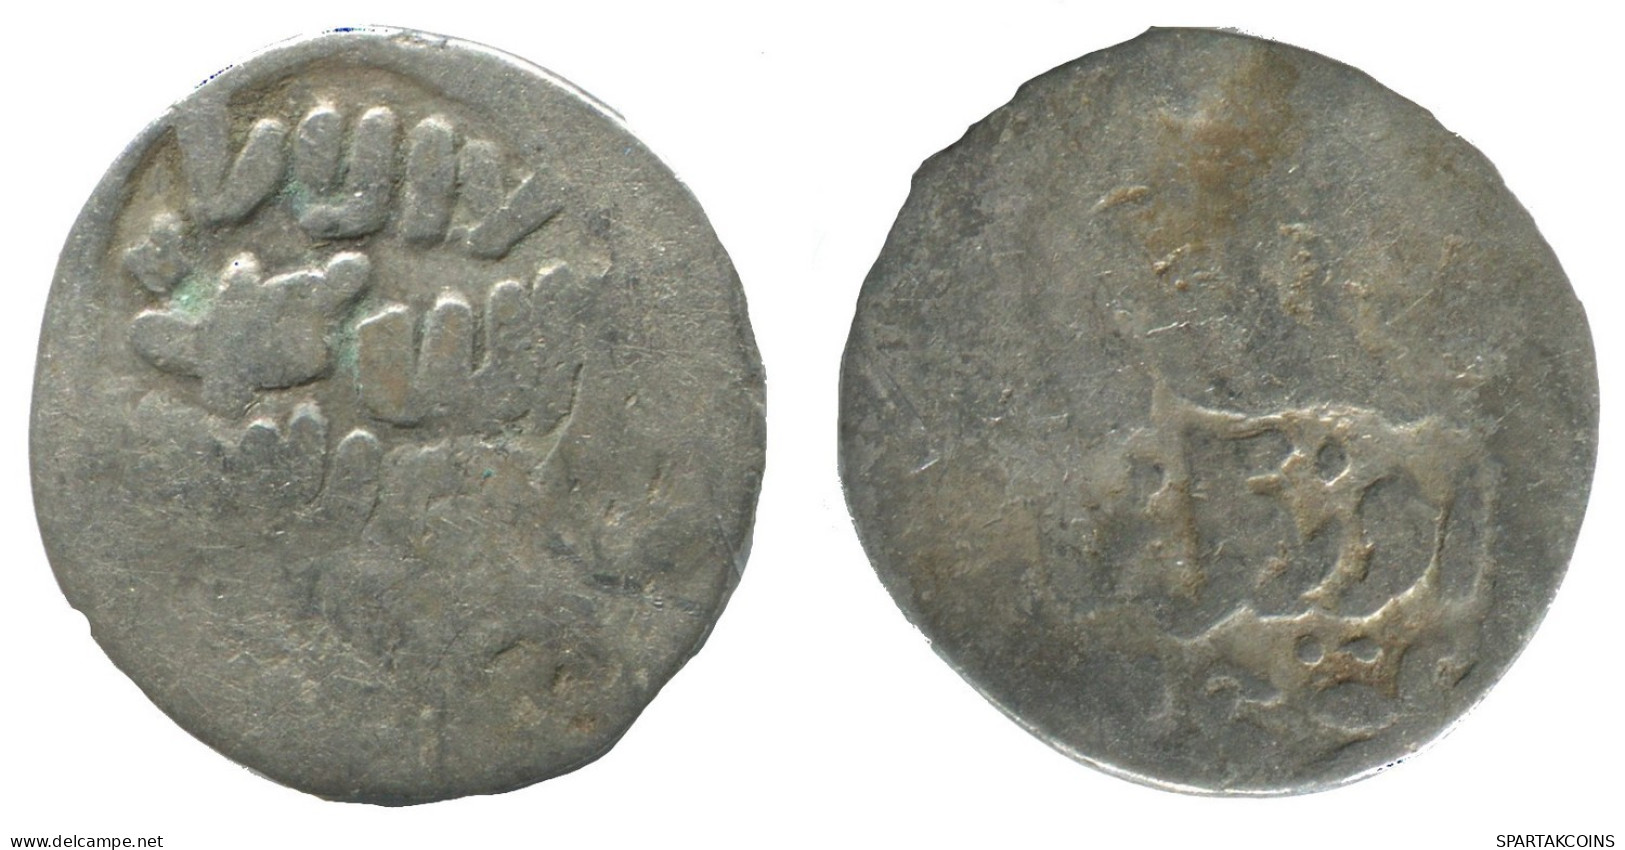 GOLDEN HORDE Silver Dirham Medieval Islamic Coin 1g/17mm #NNN1995.8.F.A - Islamic